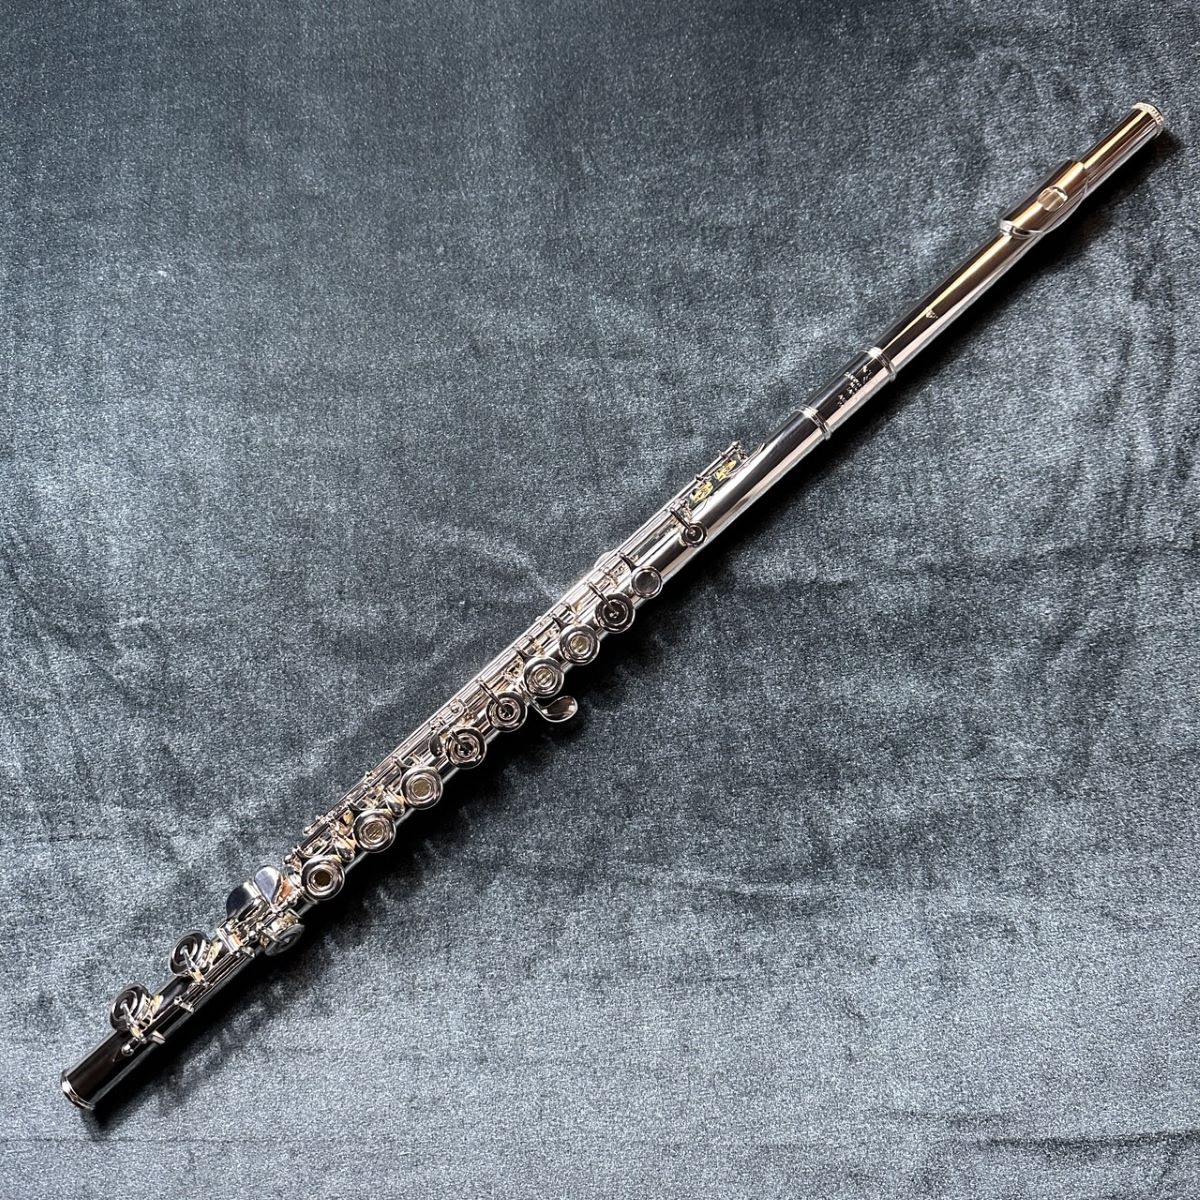 管体銀製 アームストロング フルート リングキイ - 管楽器